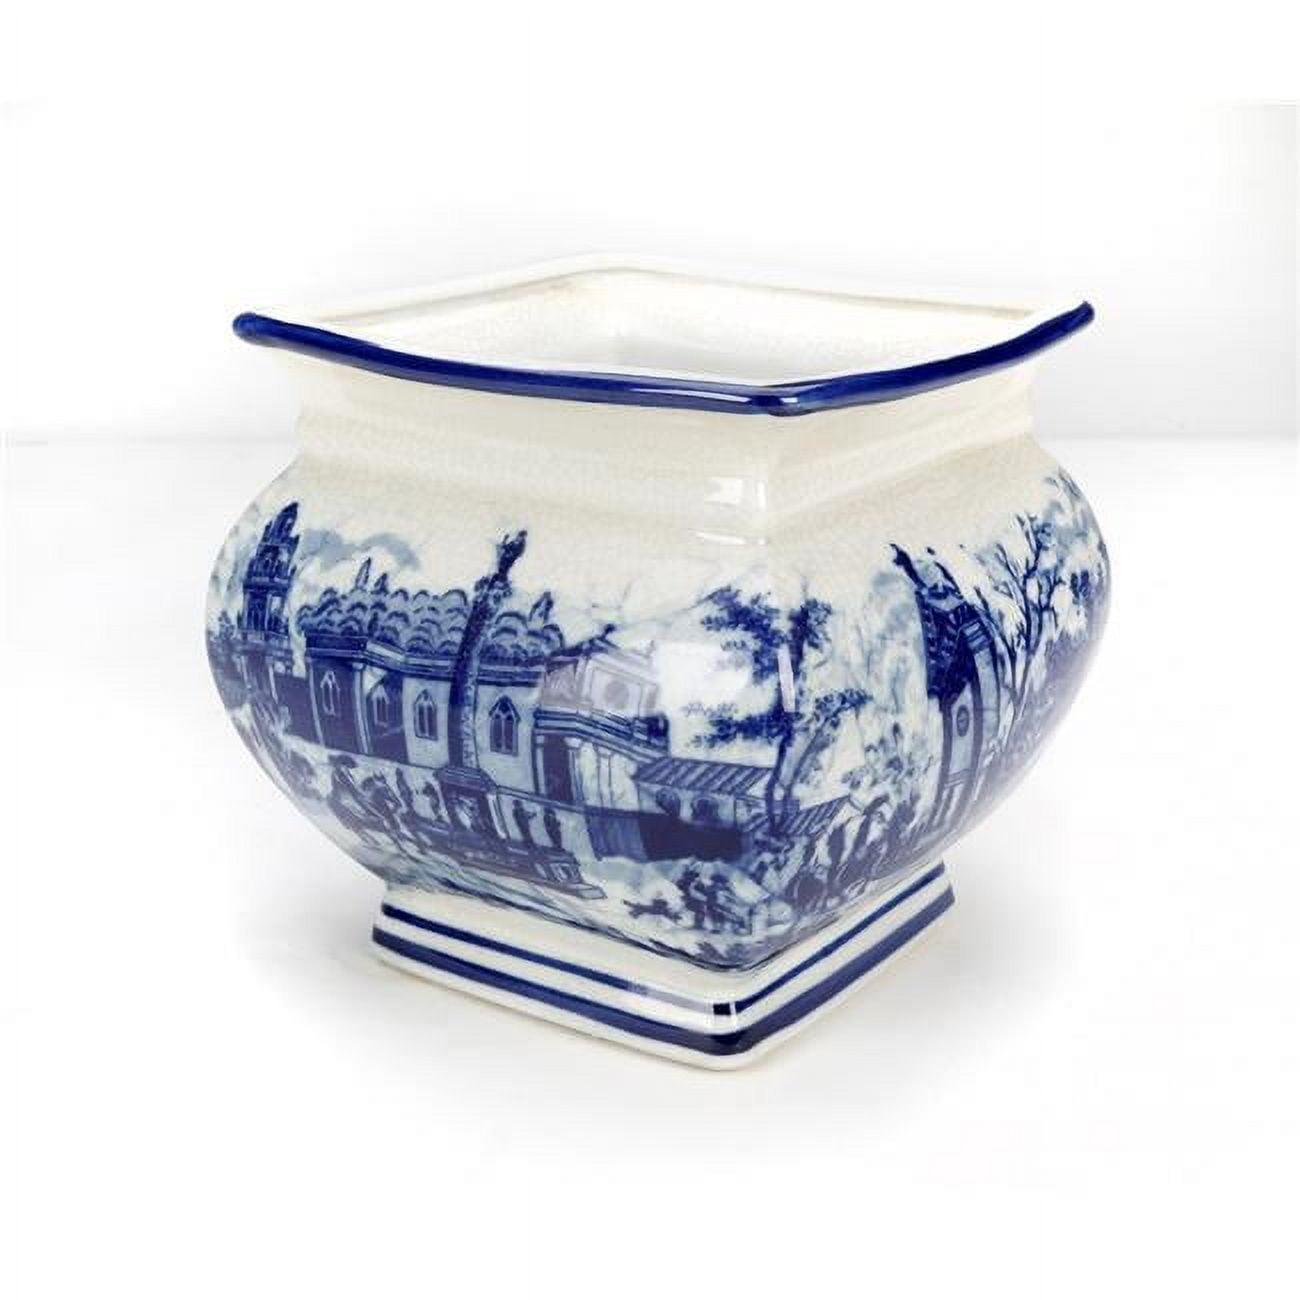 Serene Blue and White Italian Village Porcelain Planter